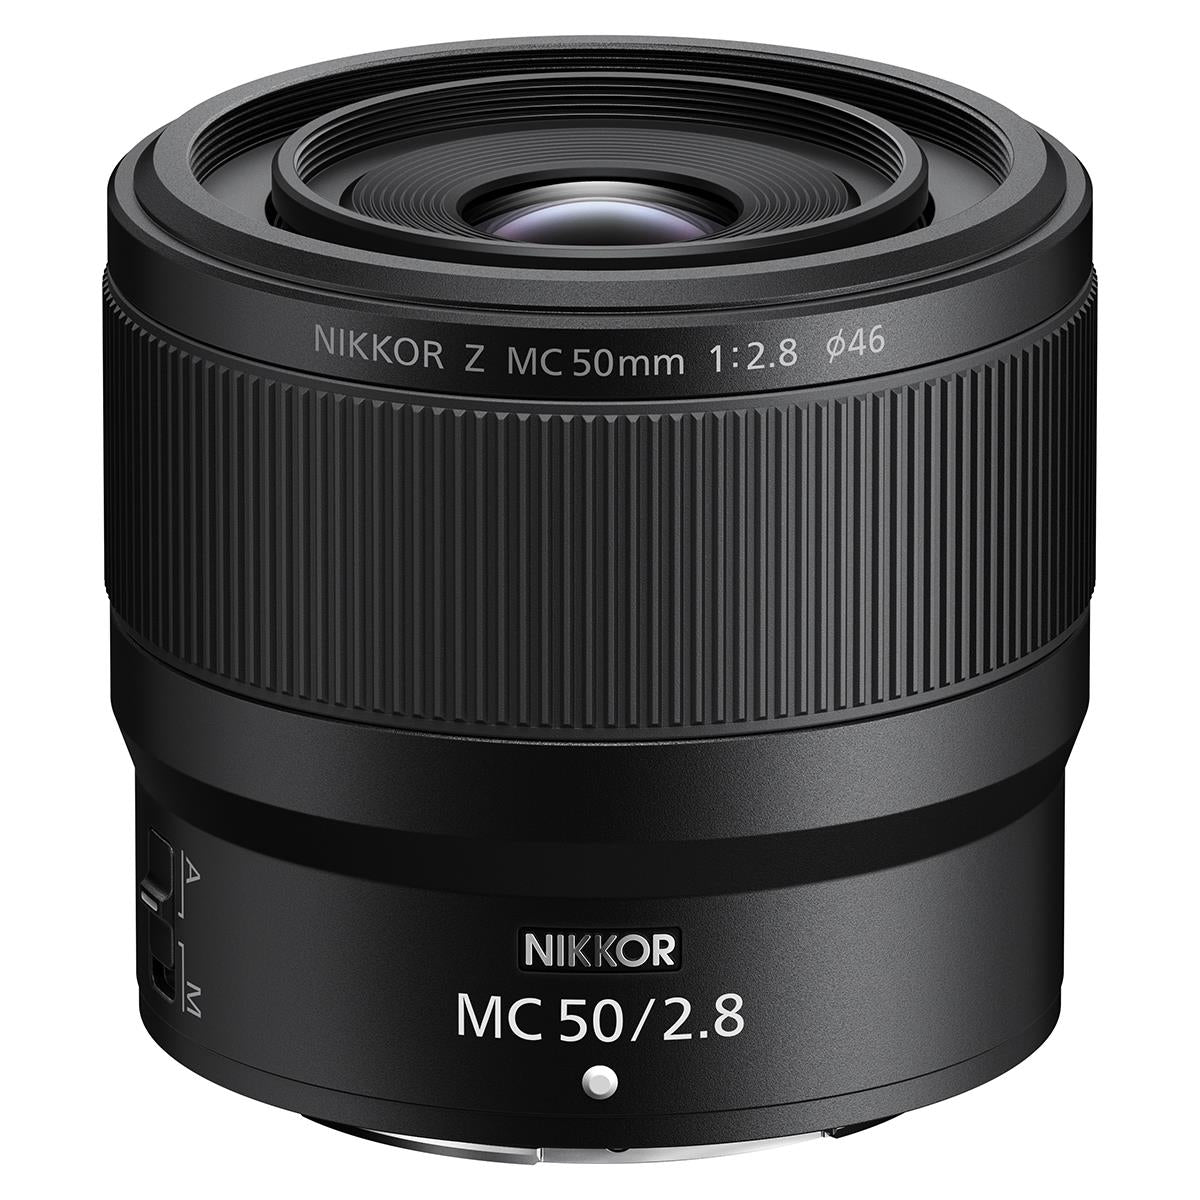 Nikon NIKKOR Z MC 50mm f/2.8 Macro Lens (International Model) - Used